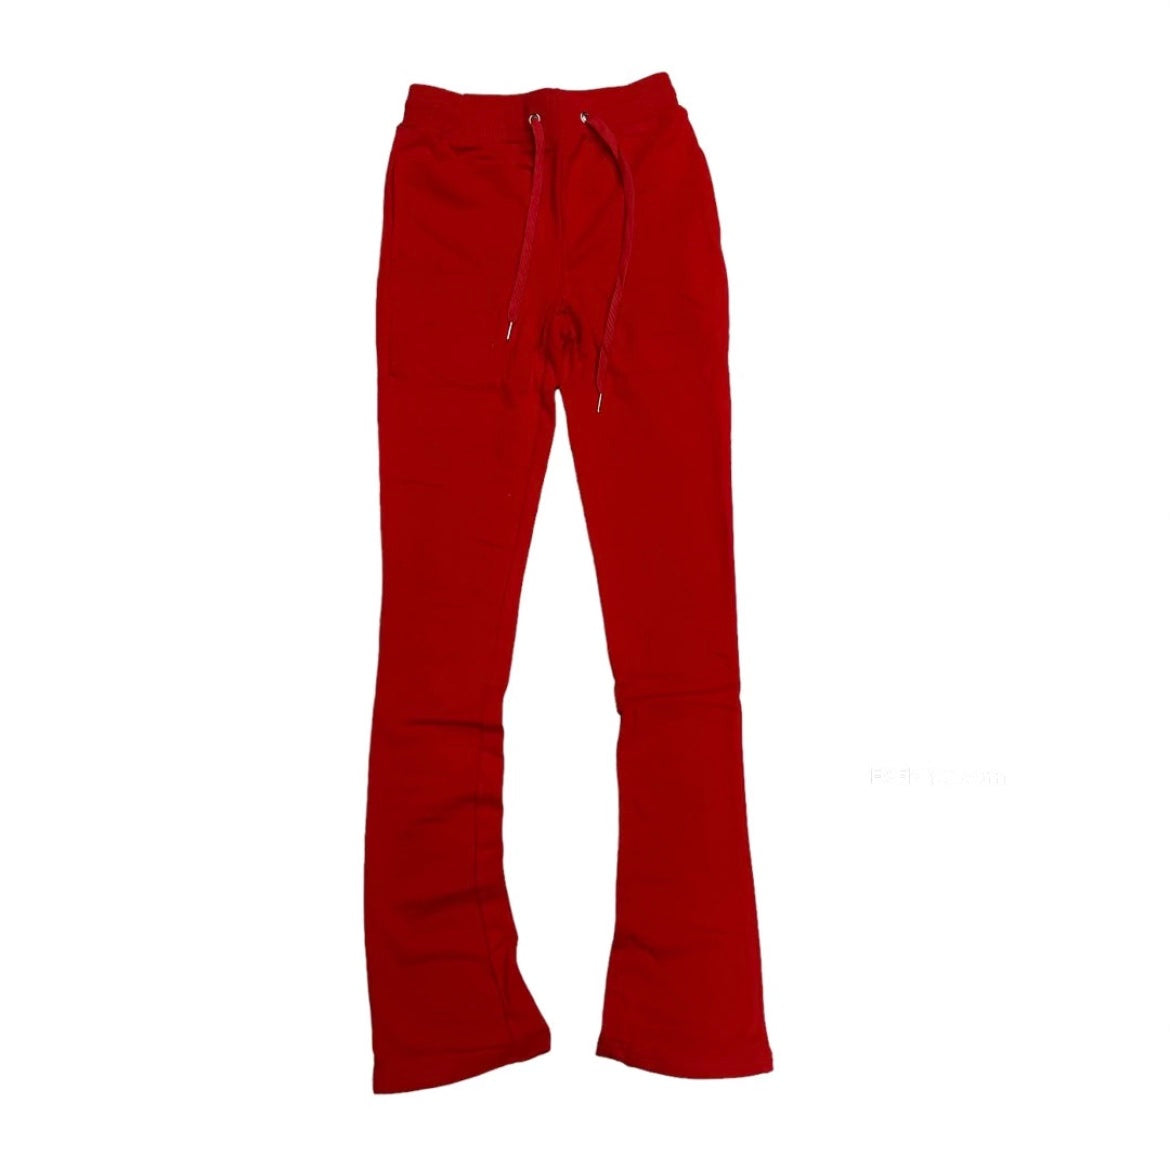 Evolution Red Stack pants